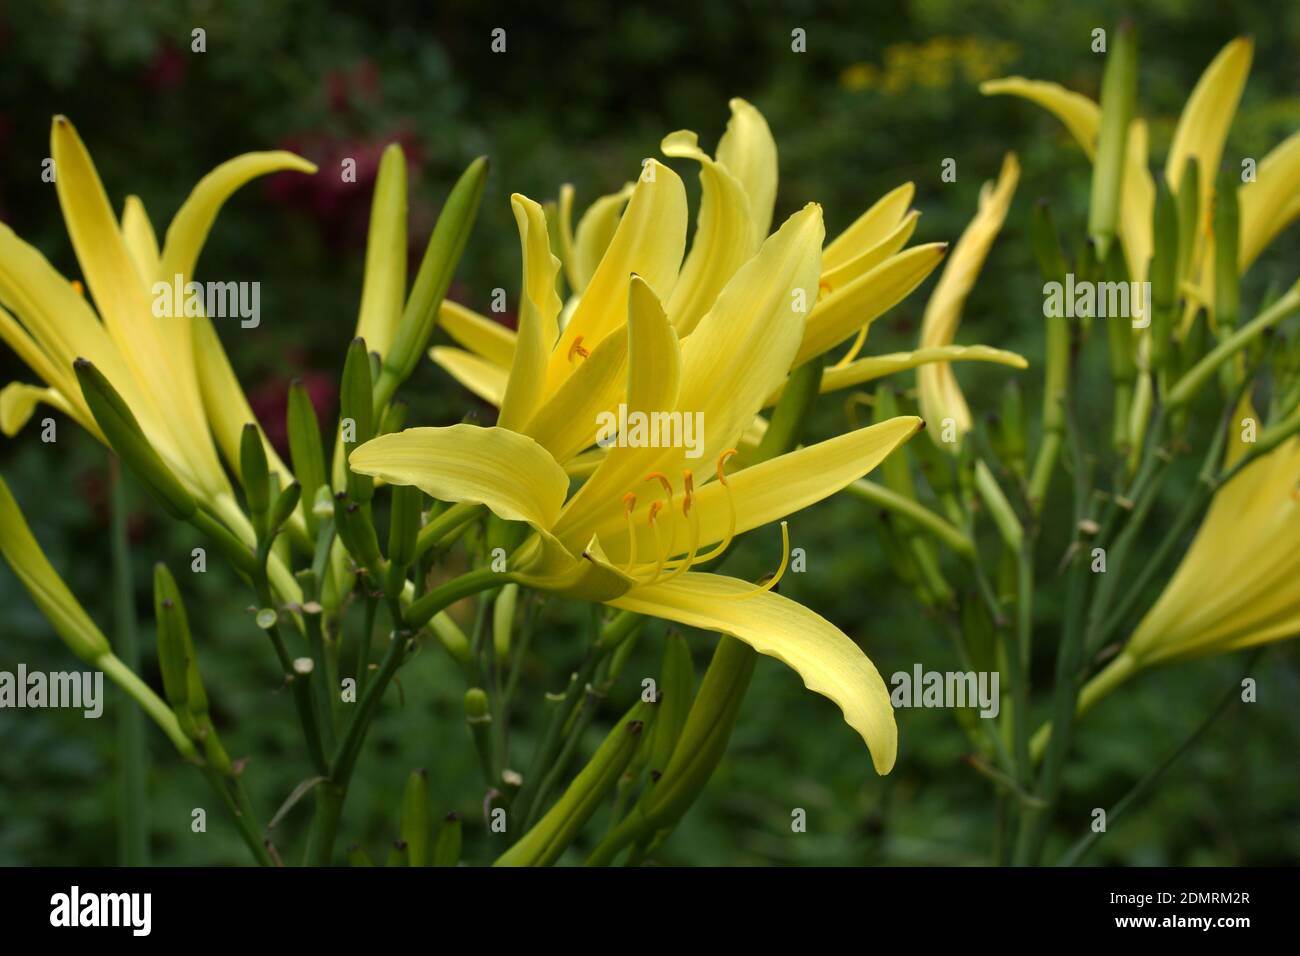 L'Hemerocallis citrina, noms communs citron daylily et long jaune daylily, est une espèce de plante herbacée vivace dans la famille des Ashodelaceae. Banque D'Images